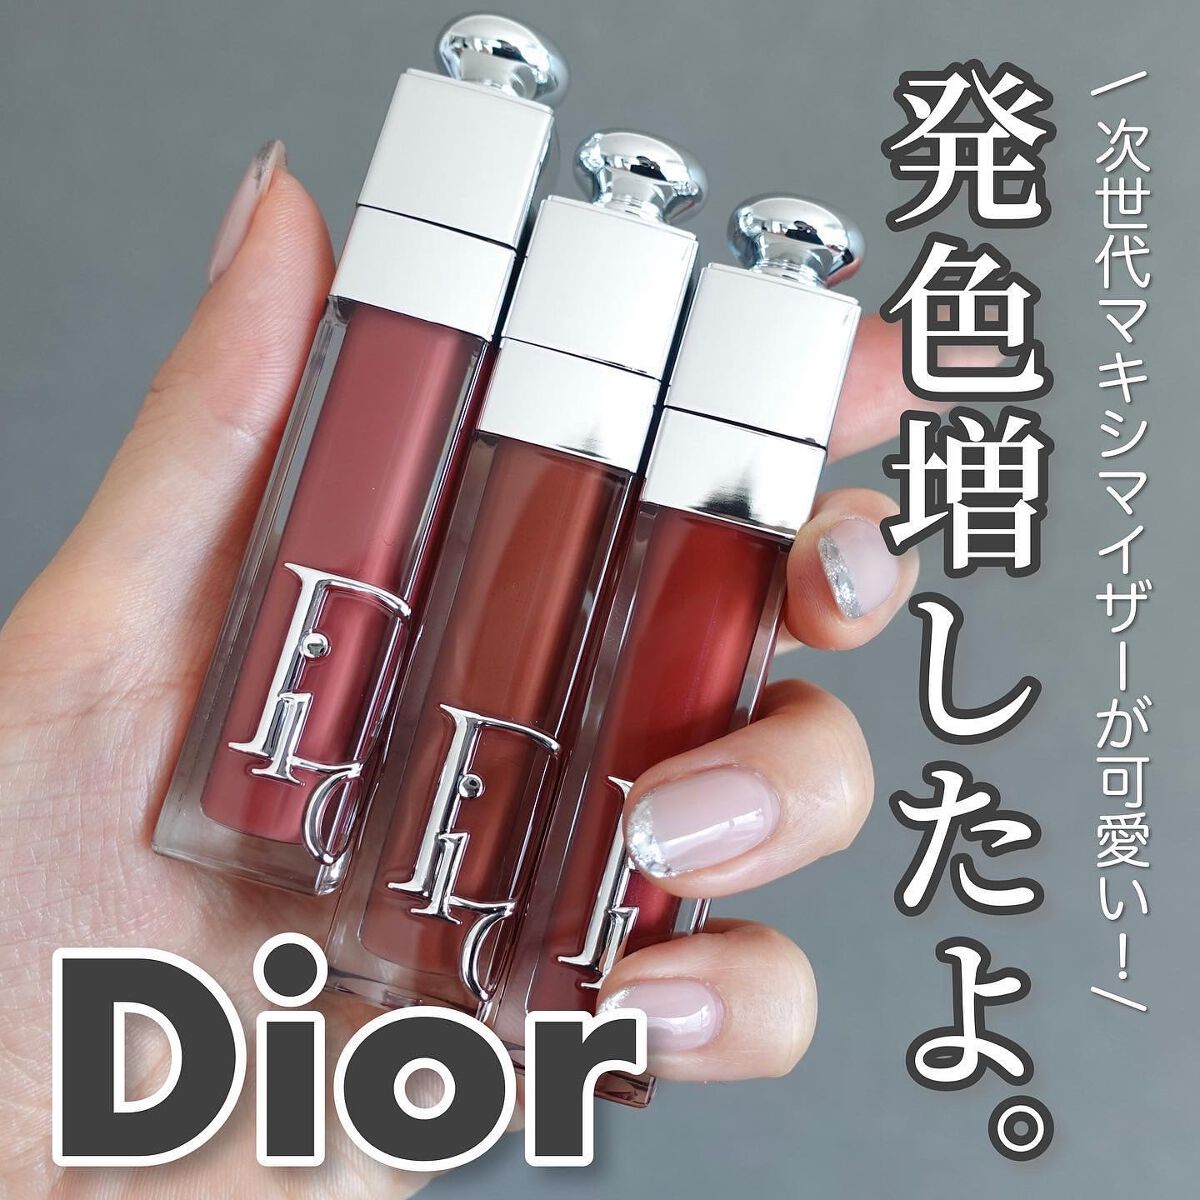 Dior新製品 ディオールアディクトリップマキシマイザー